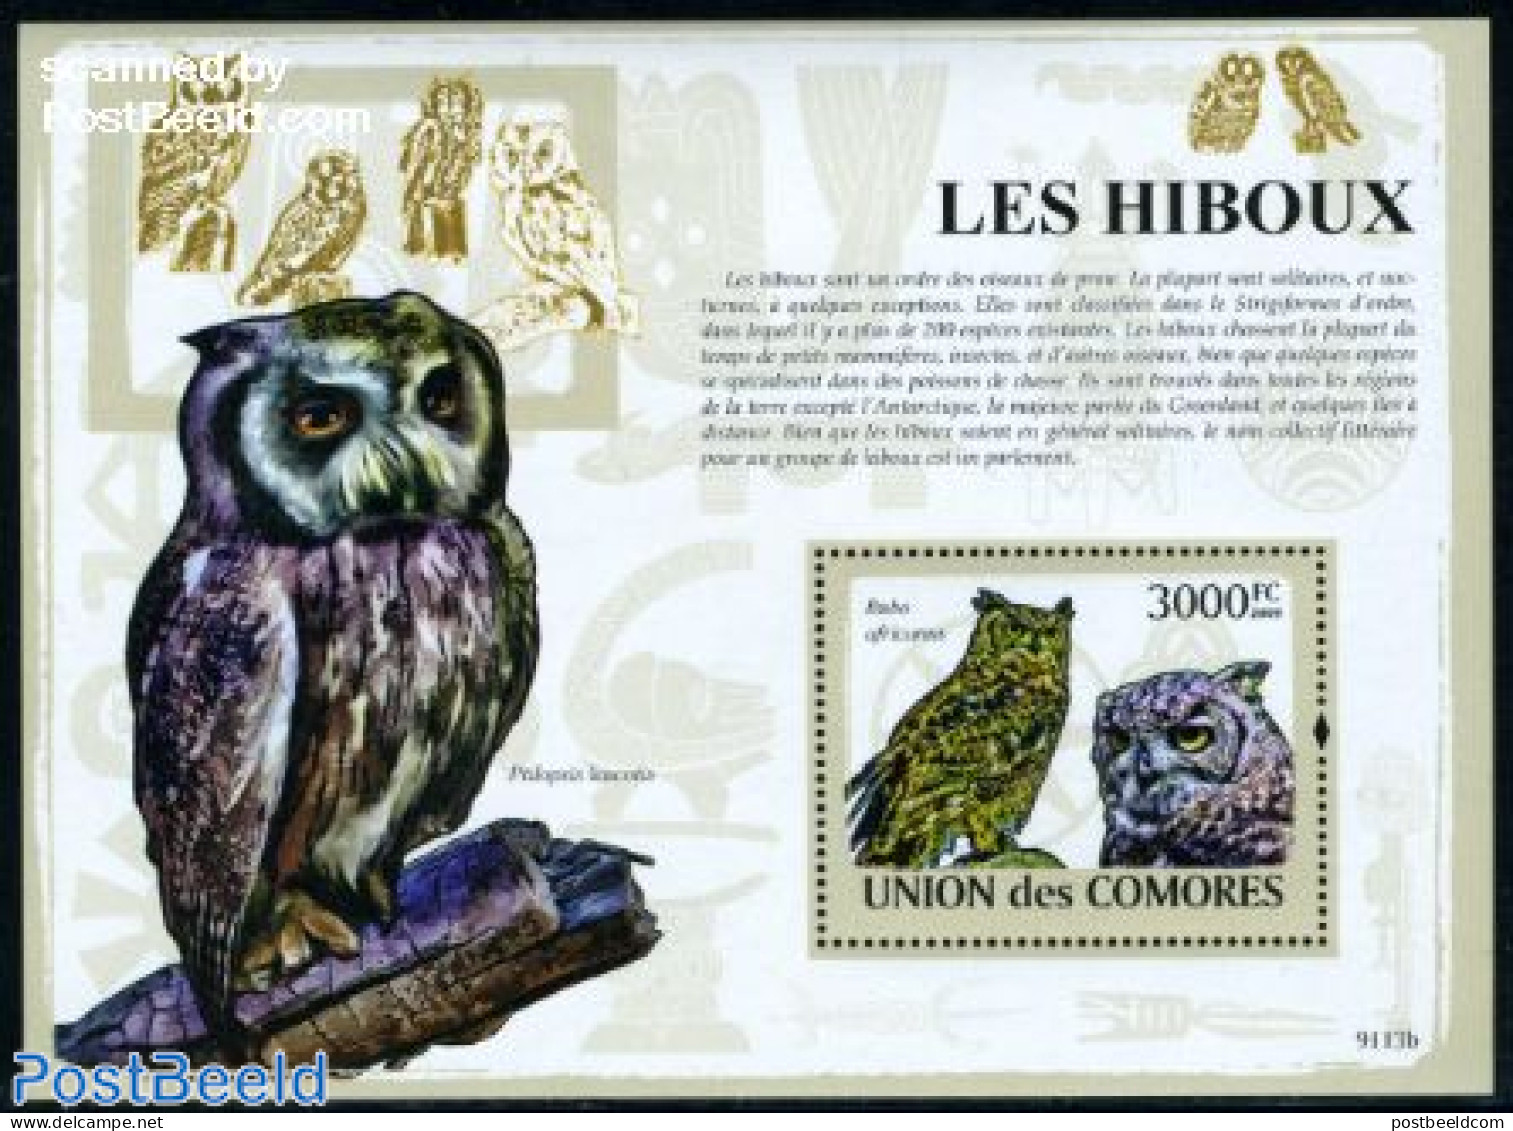 Comoros 2009 Owls S/s, Mint NH, Nature - Birds - Birds Of Prey - Owls - Comores (1975-...)